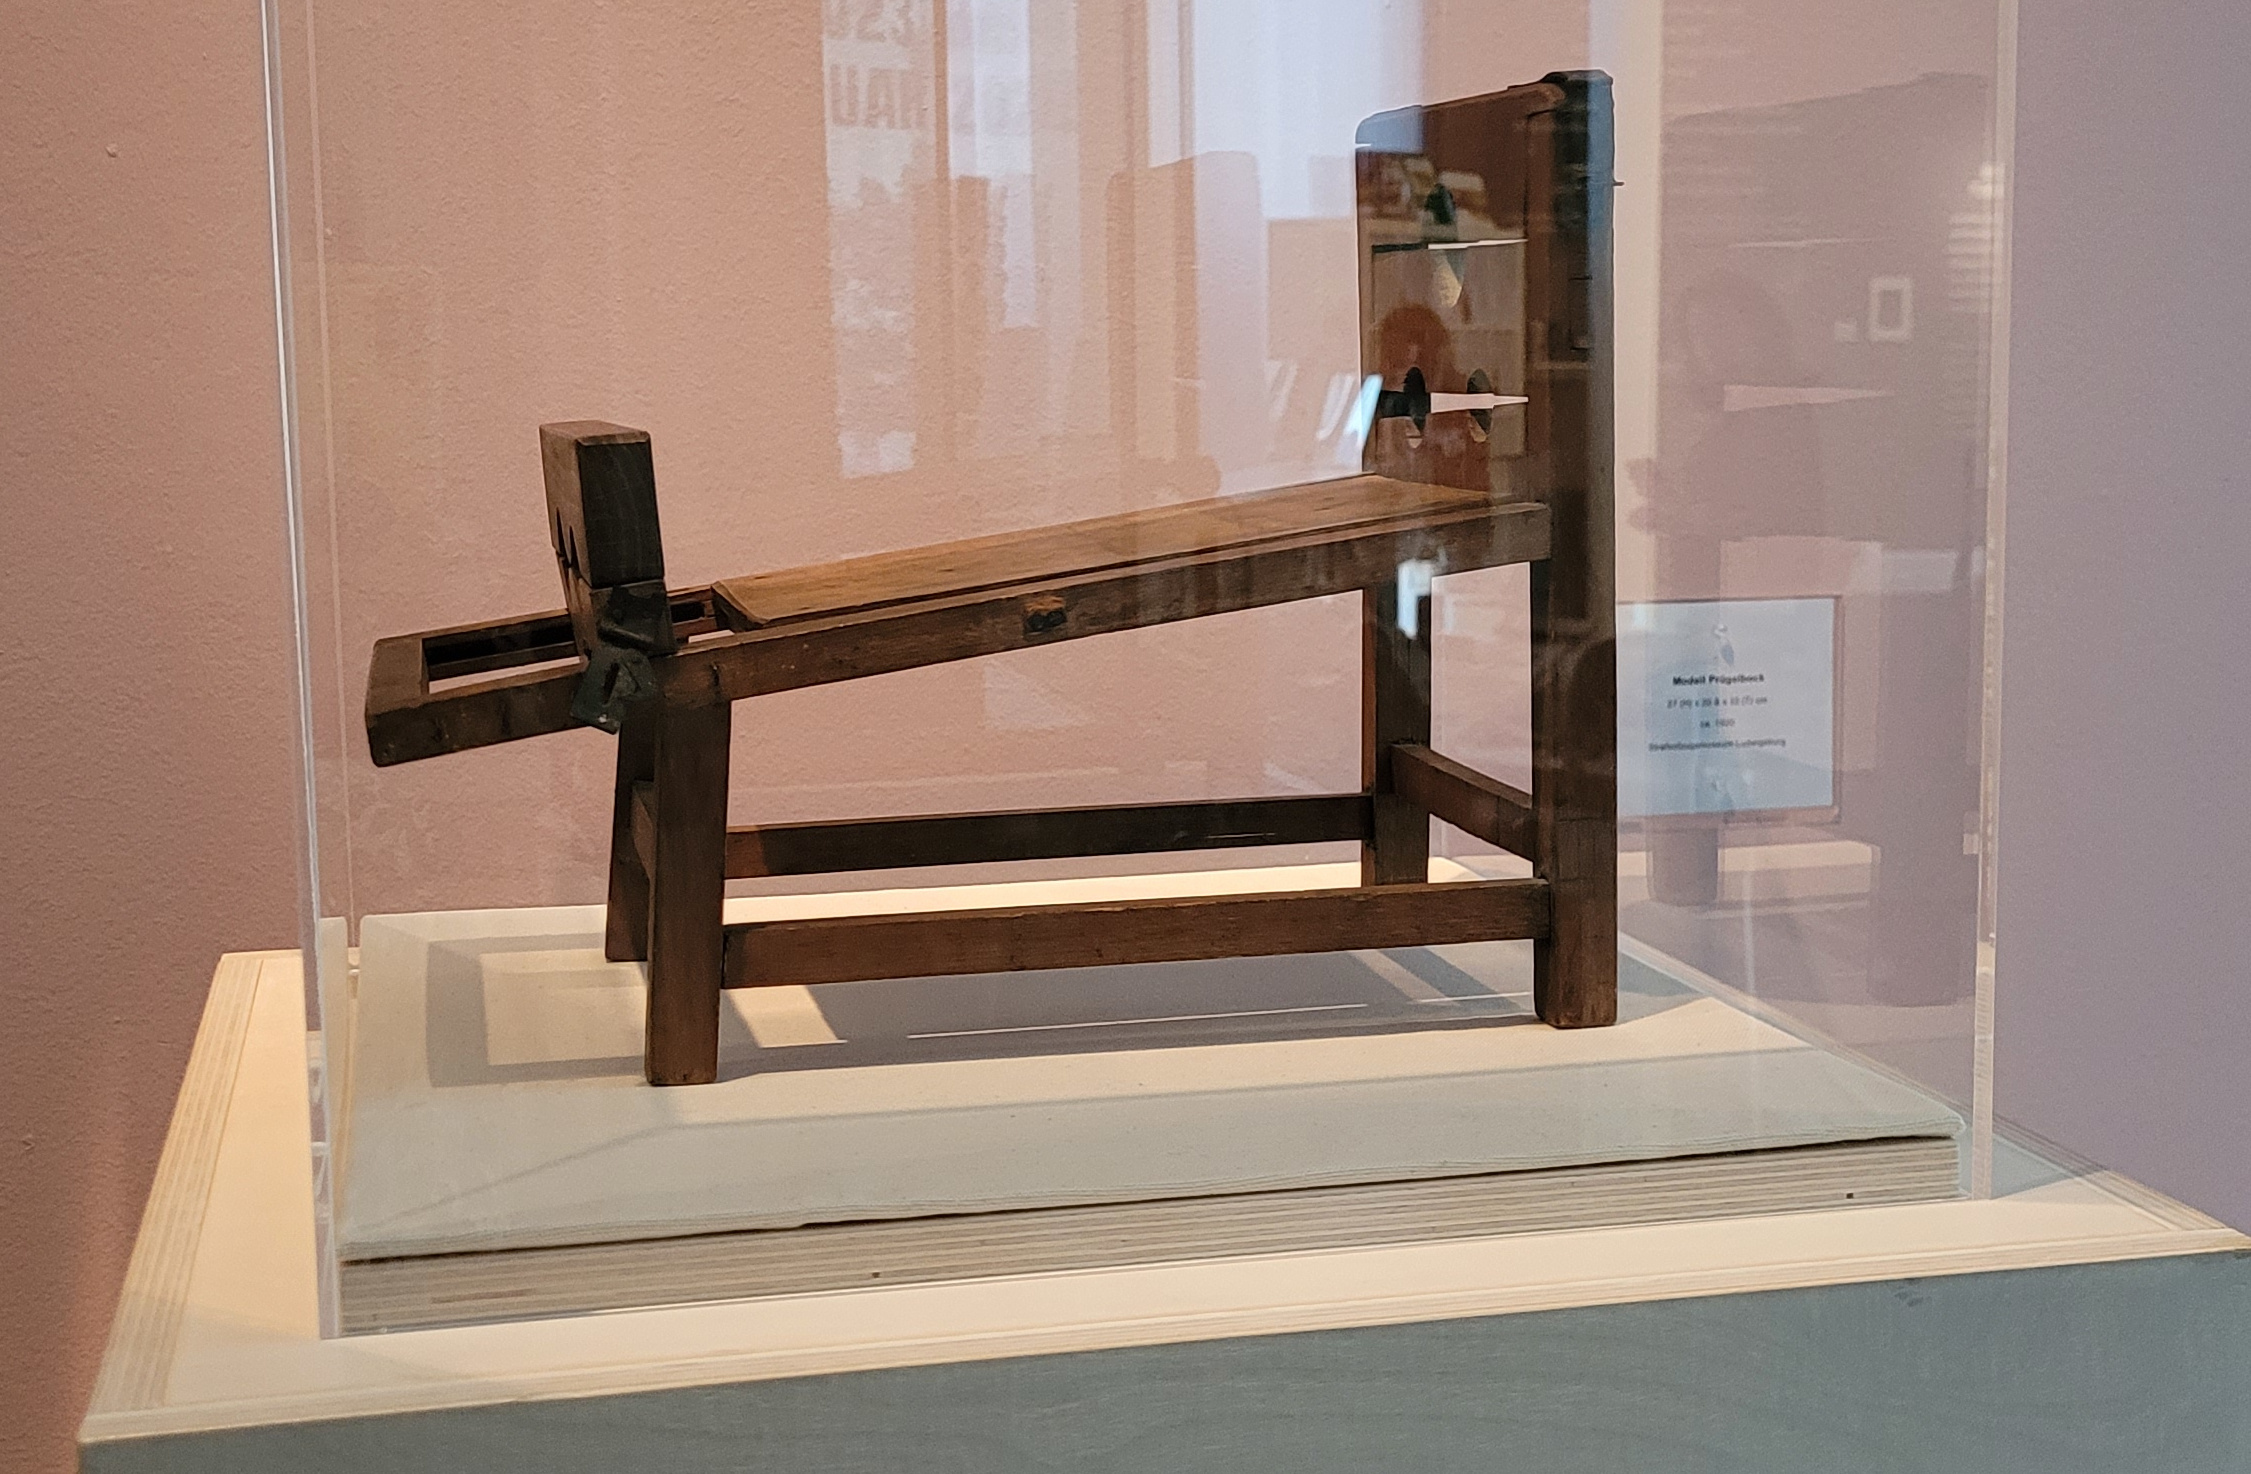 Prügelbock-Modell aus dem Strafvollzugsmuseum in einer Glasvitrine als Teil einer Ausstellung